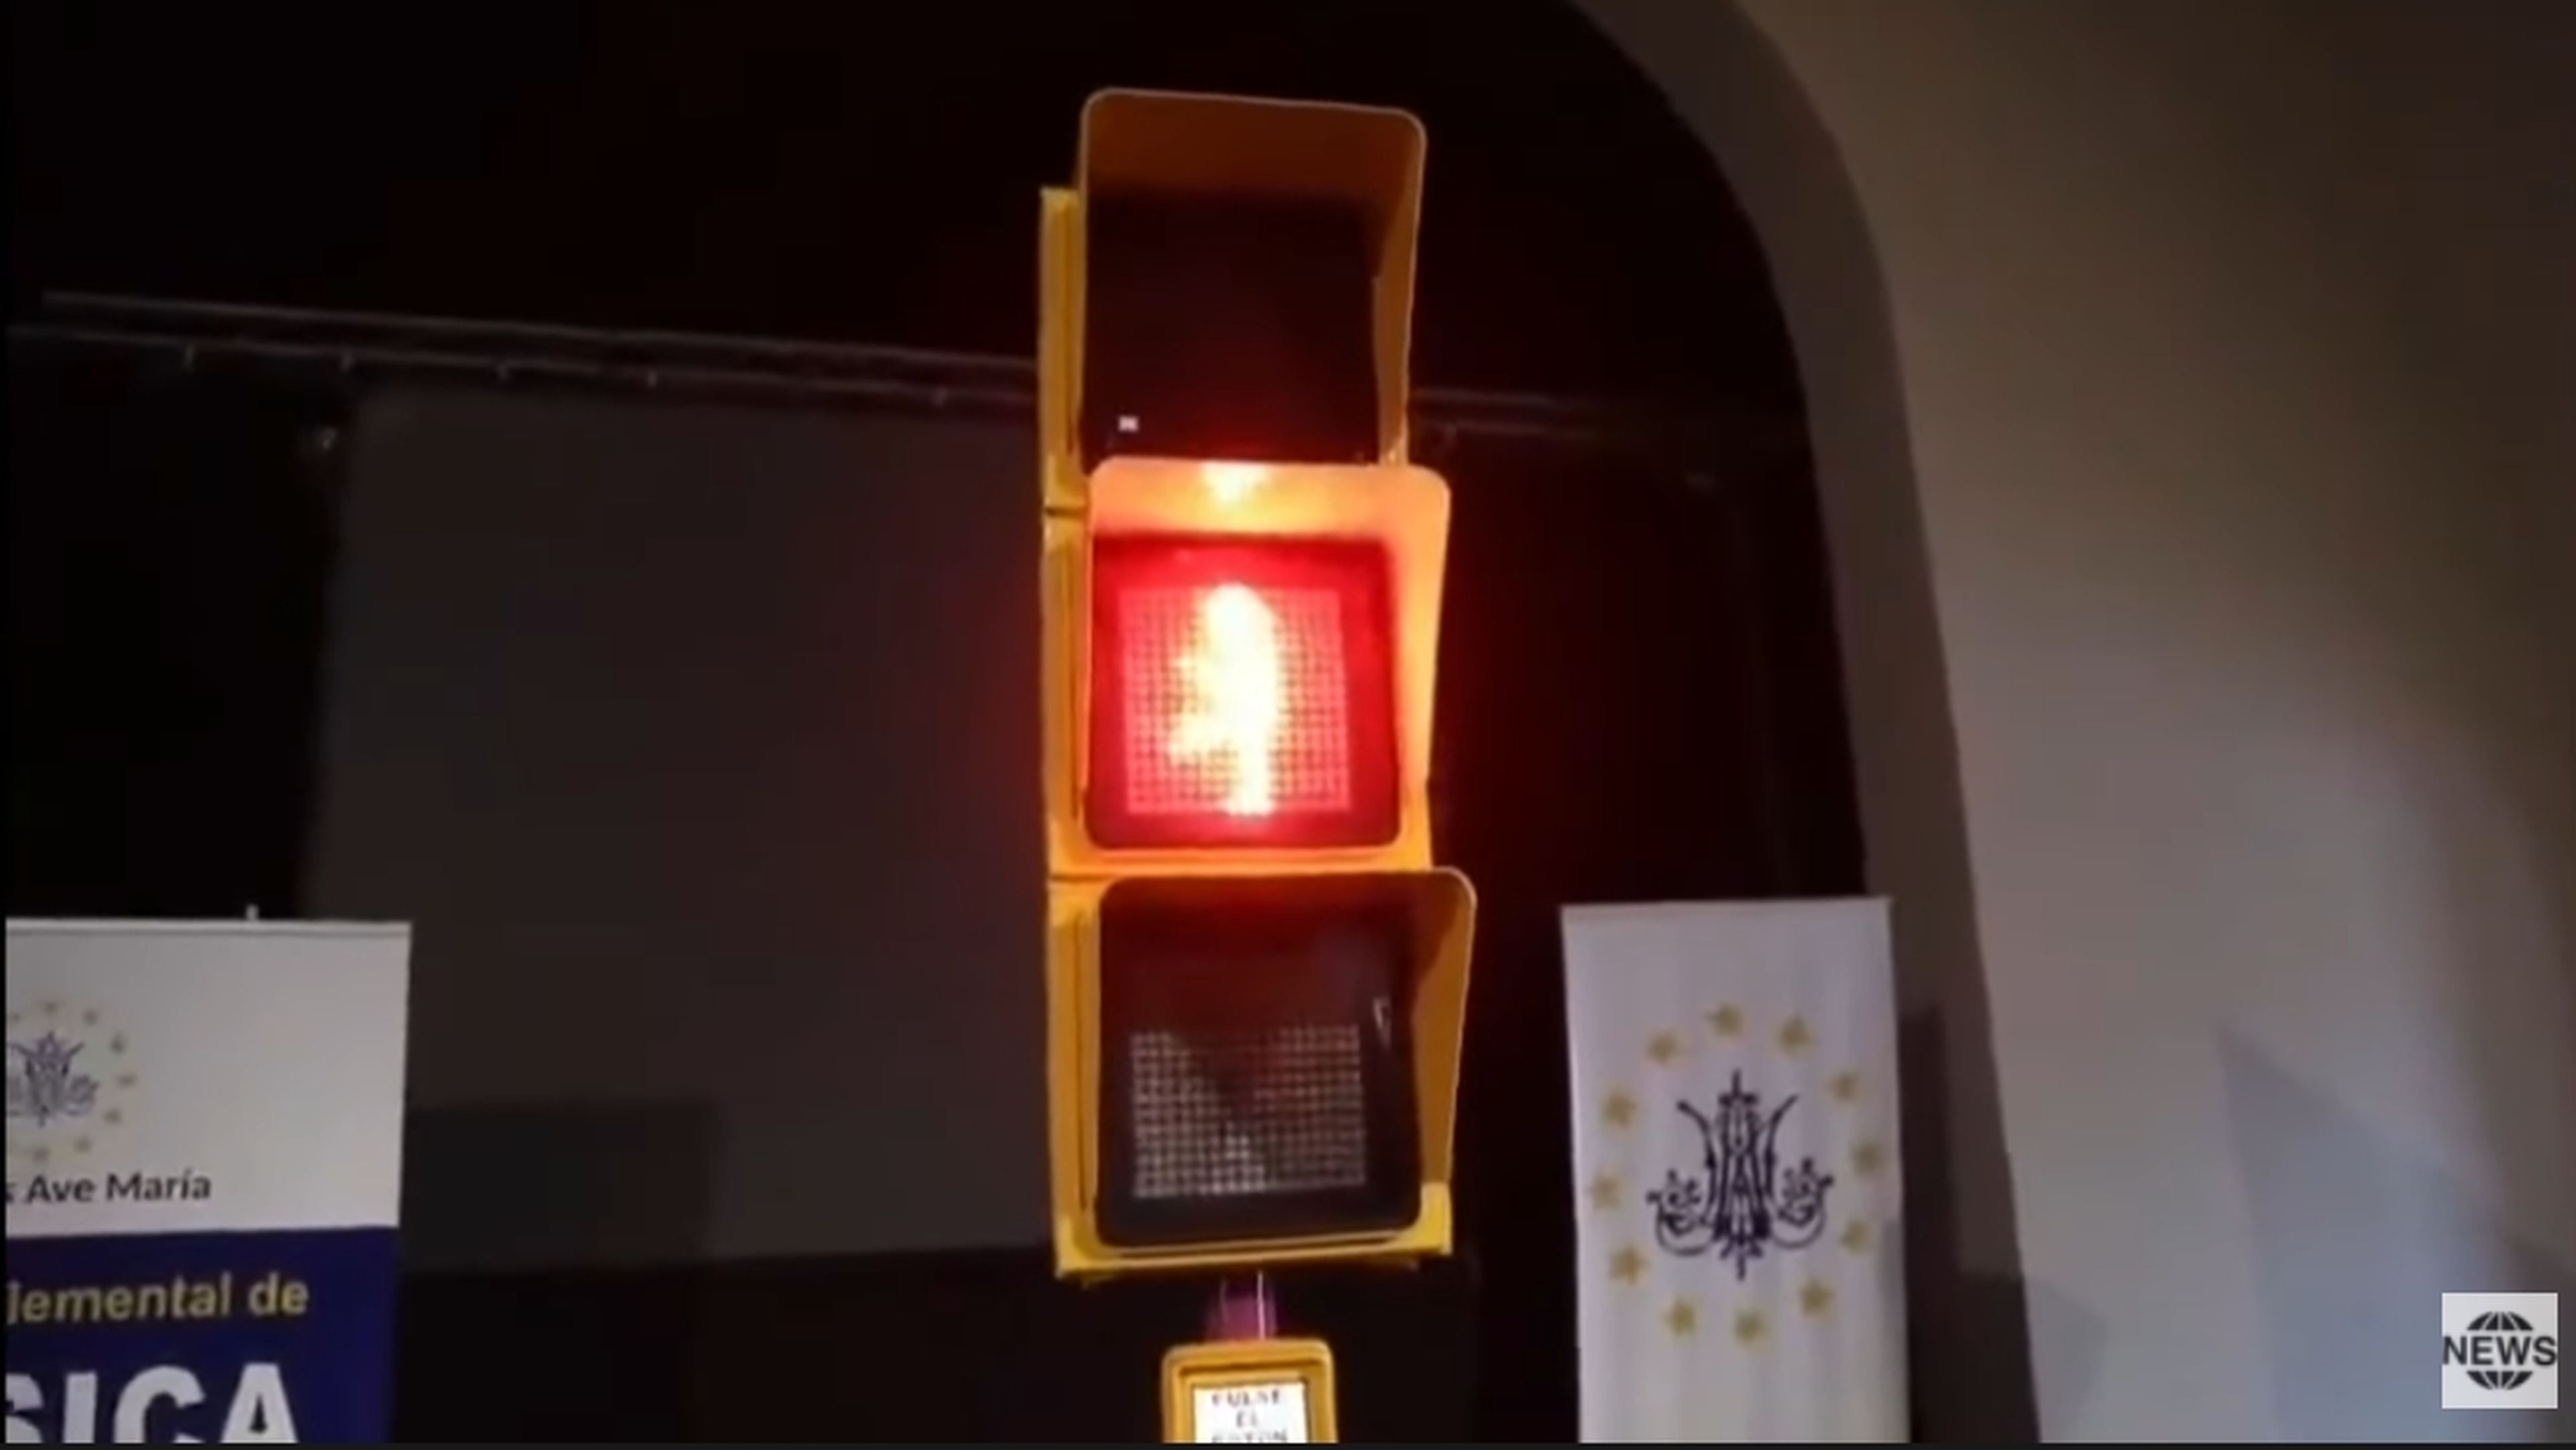 En Málaga inauguran el semáforo de Chiquito de la Calzada, ojalá todos los semáforos fueran así